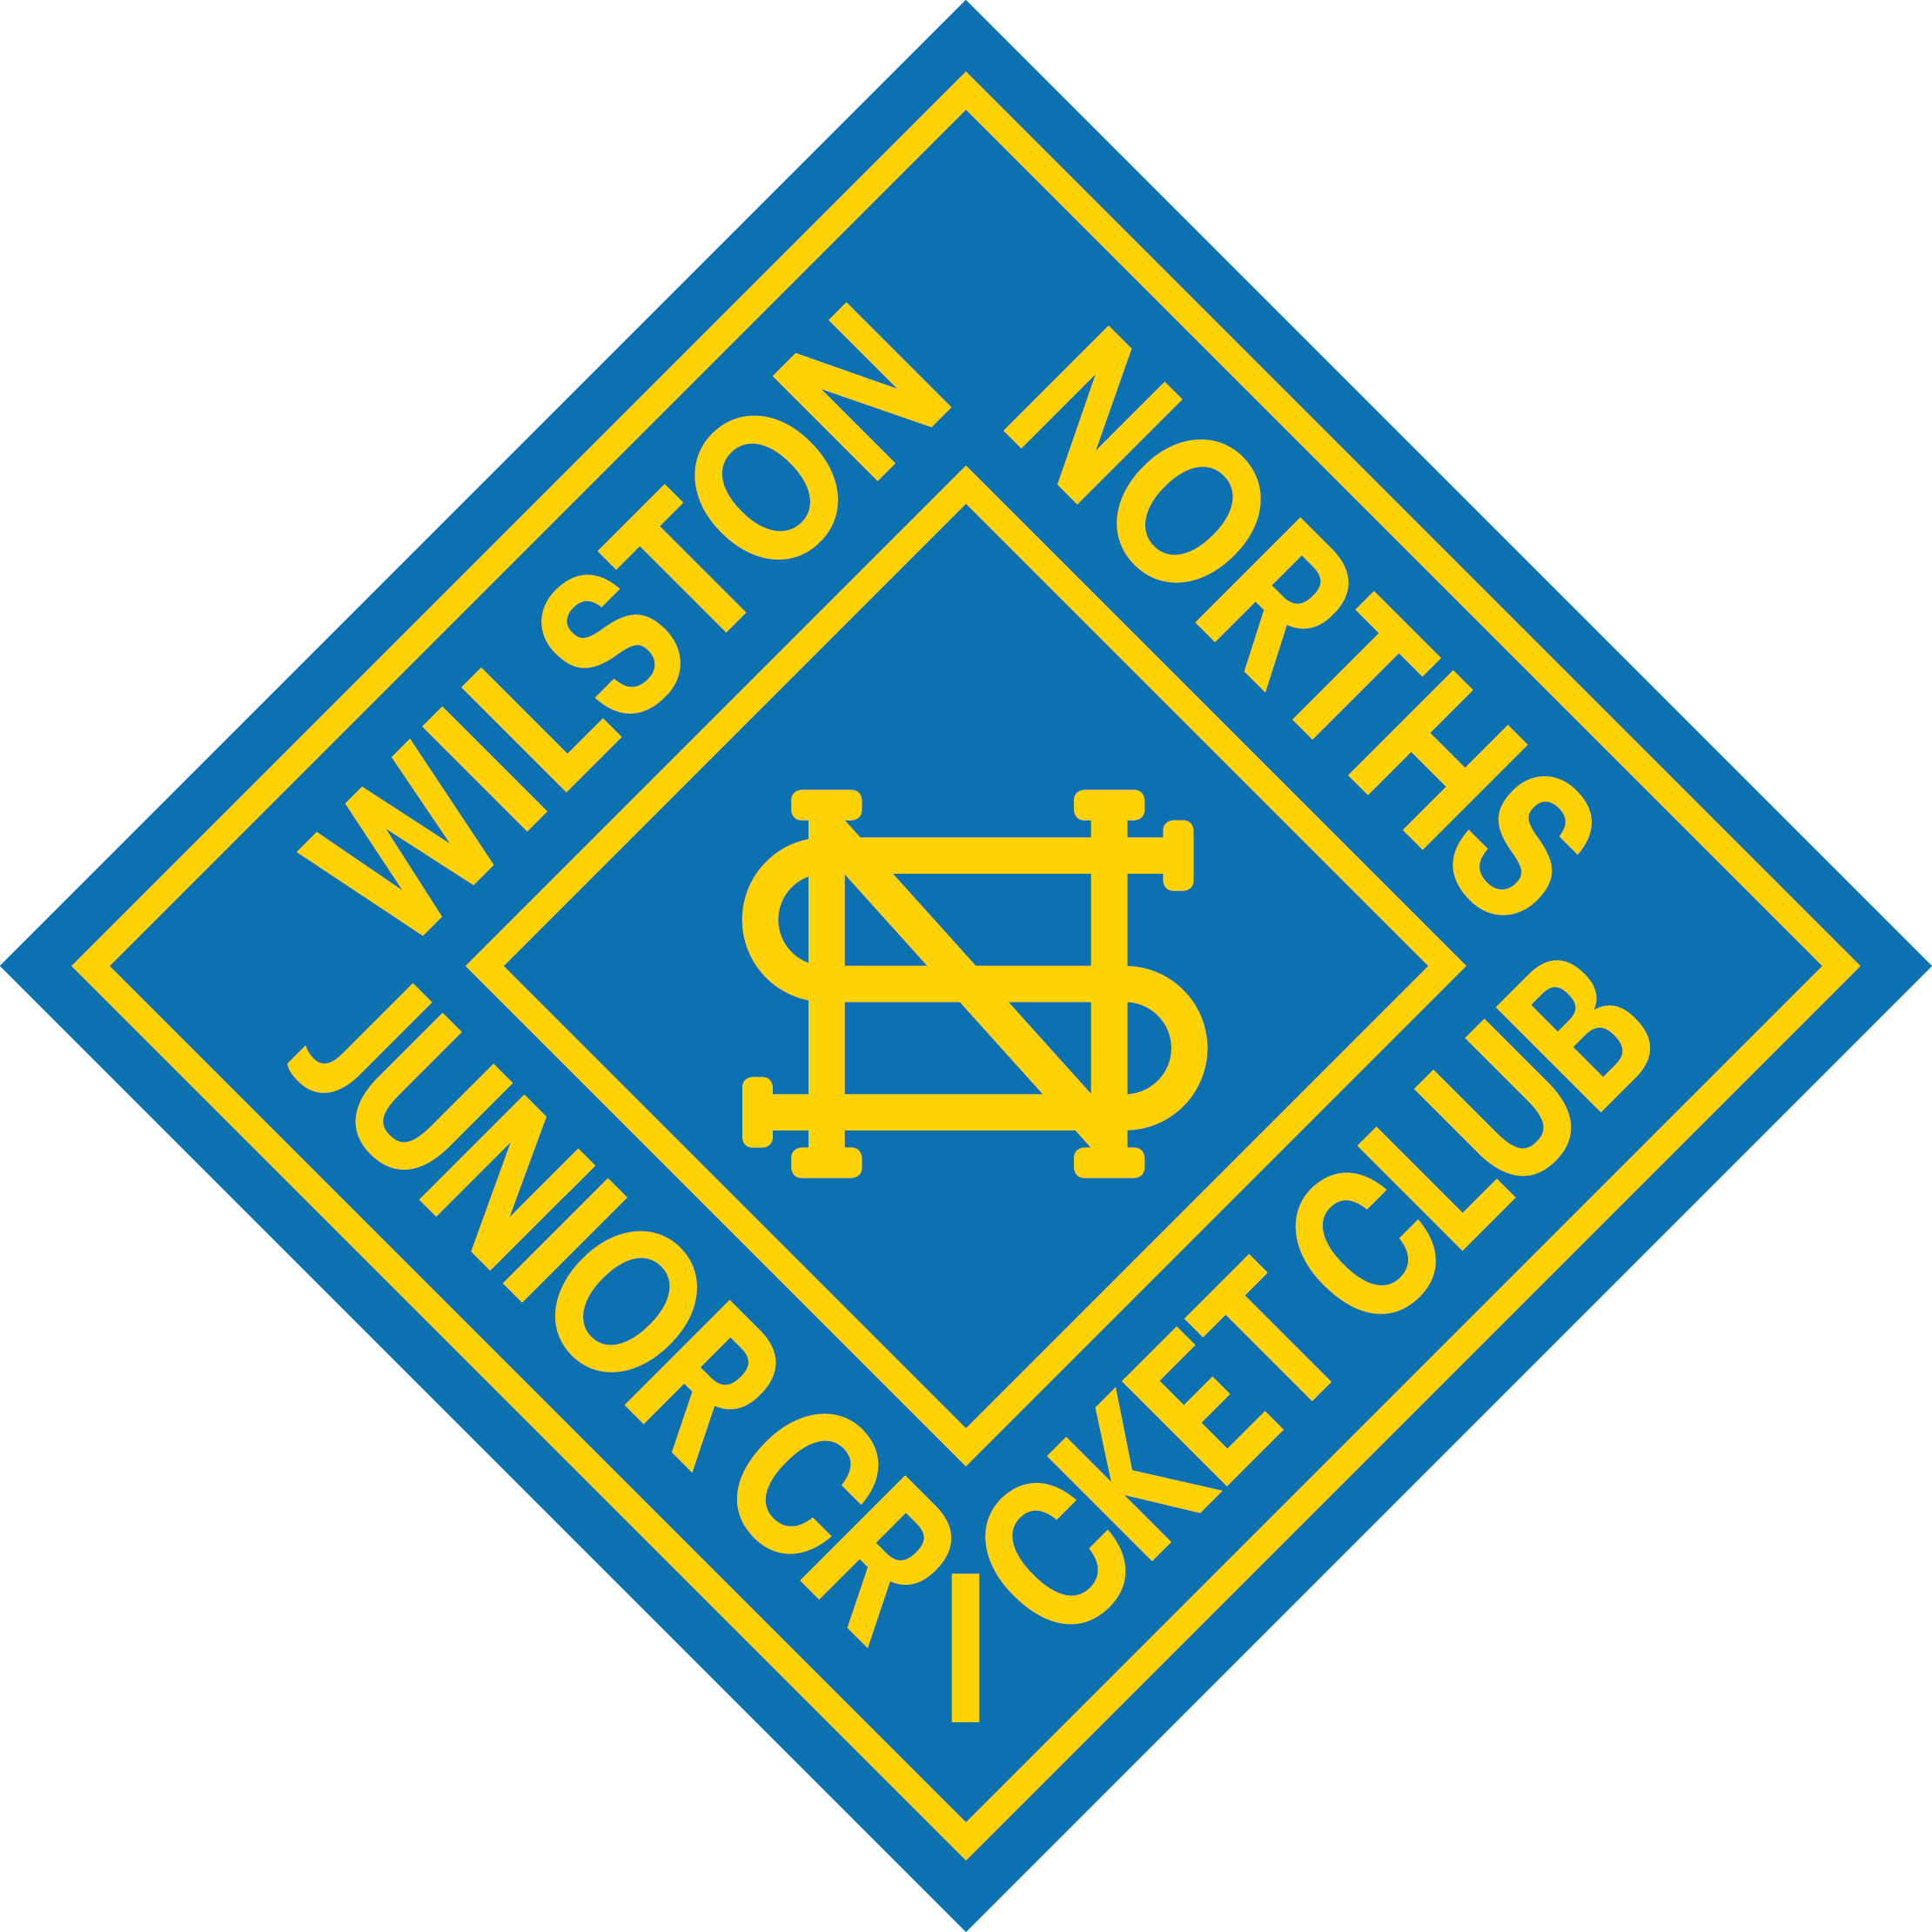 Wilston north junior cricket club logo.